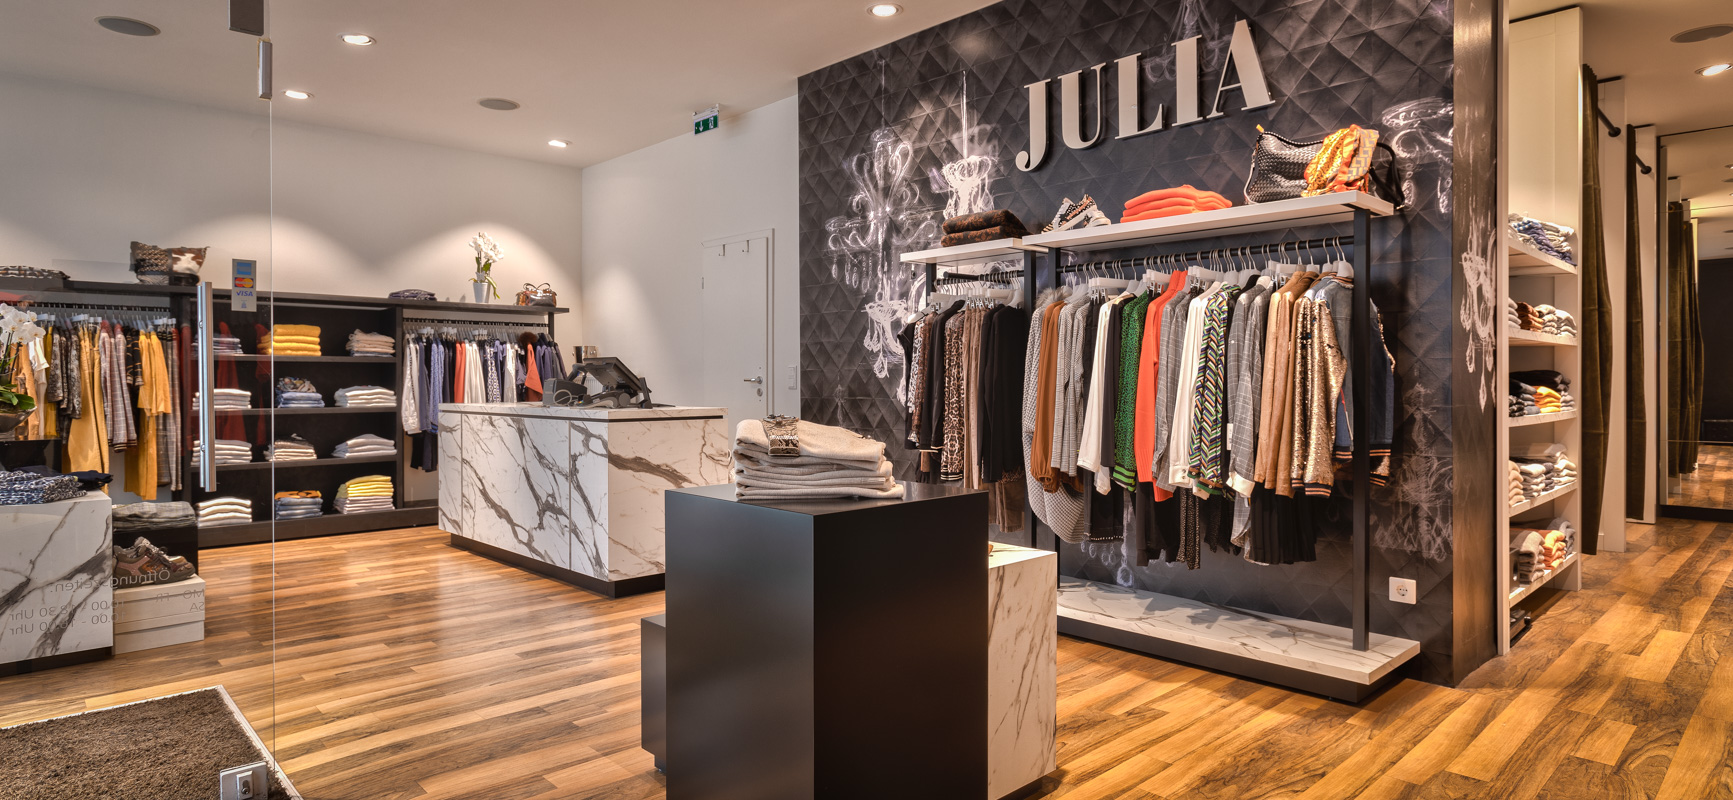 Boutique Julia | Hattingen - Fashion